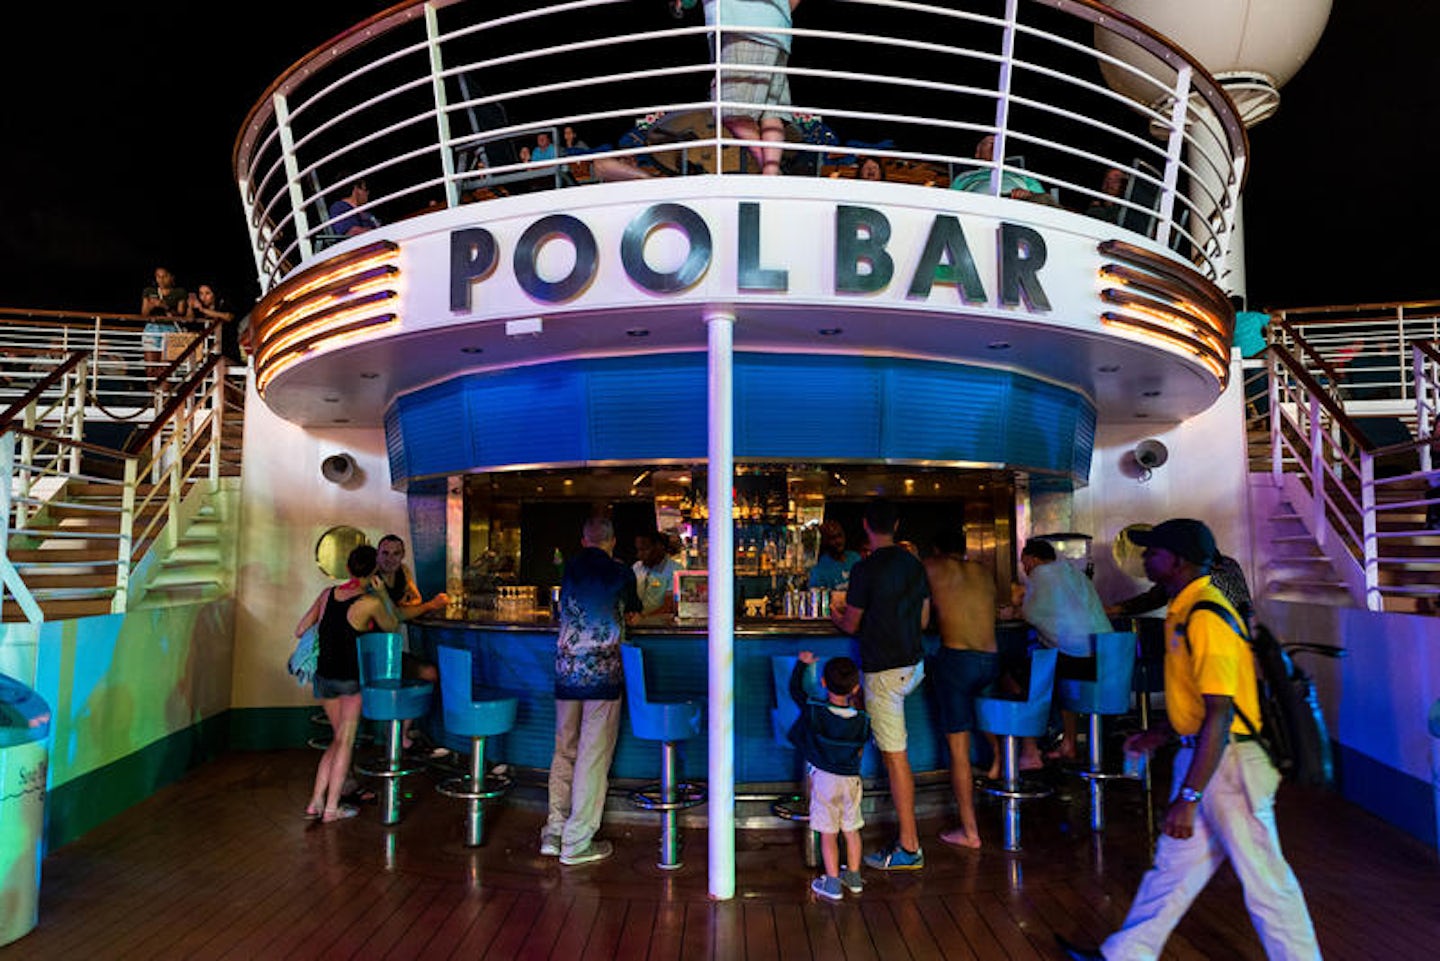 Pool Bar on Adventure of the Seas